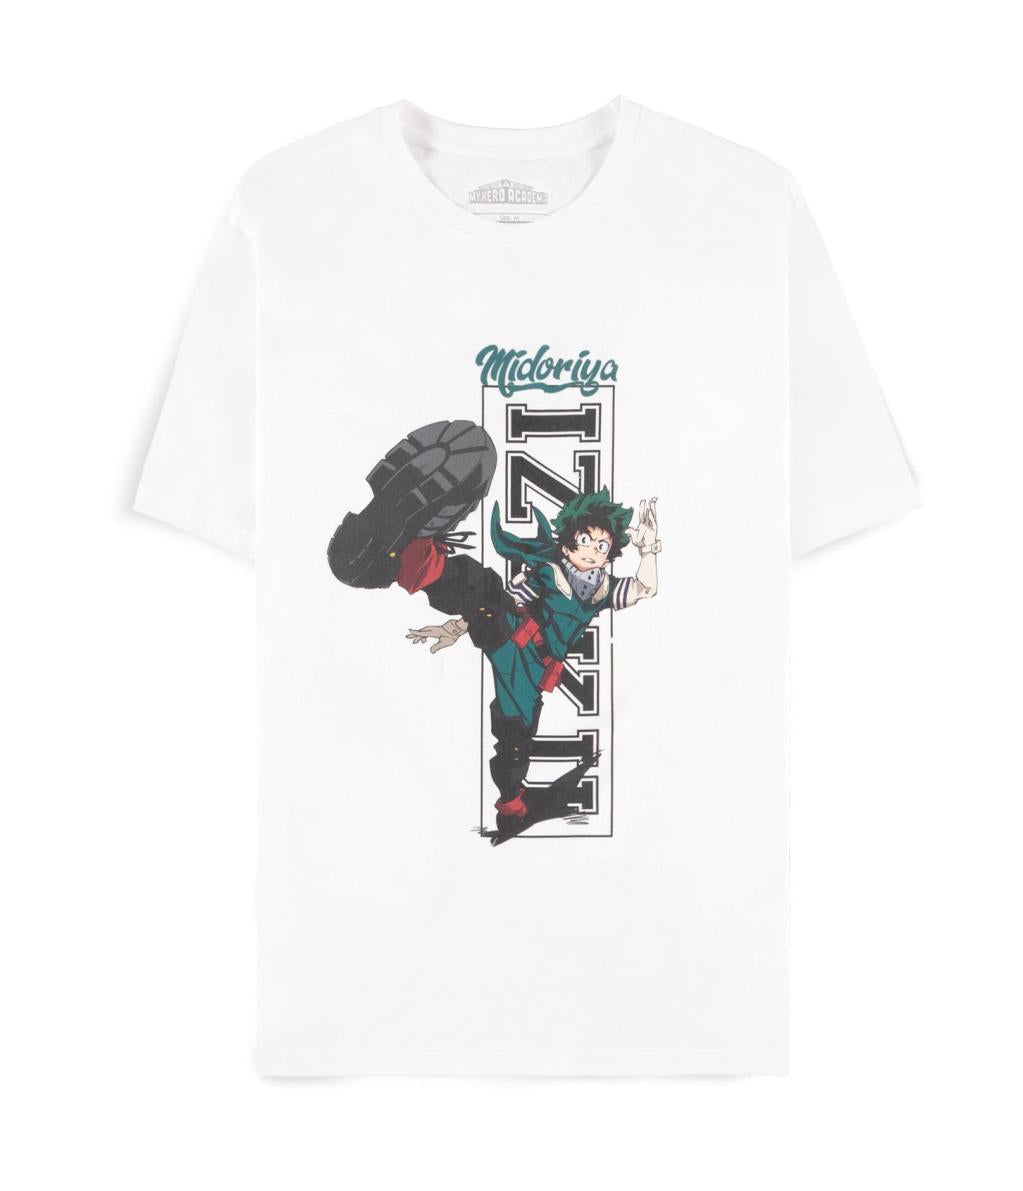 MY HERO ACADEMIA - Izuku Midoriya - Men's T-shirt (2XL)